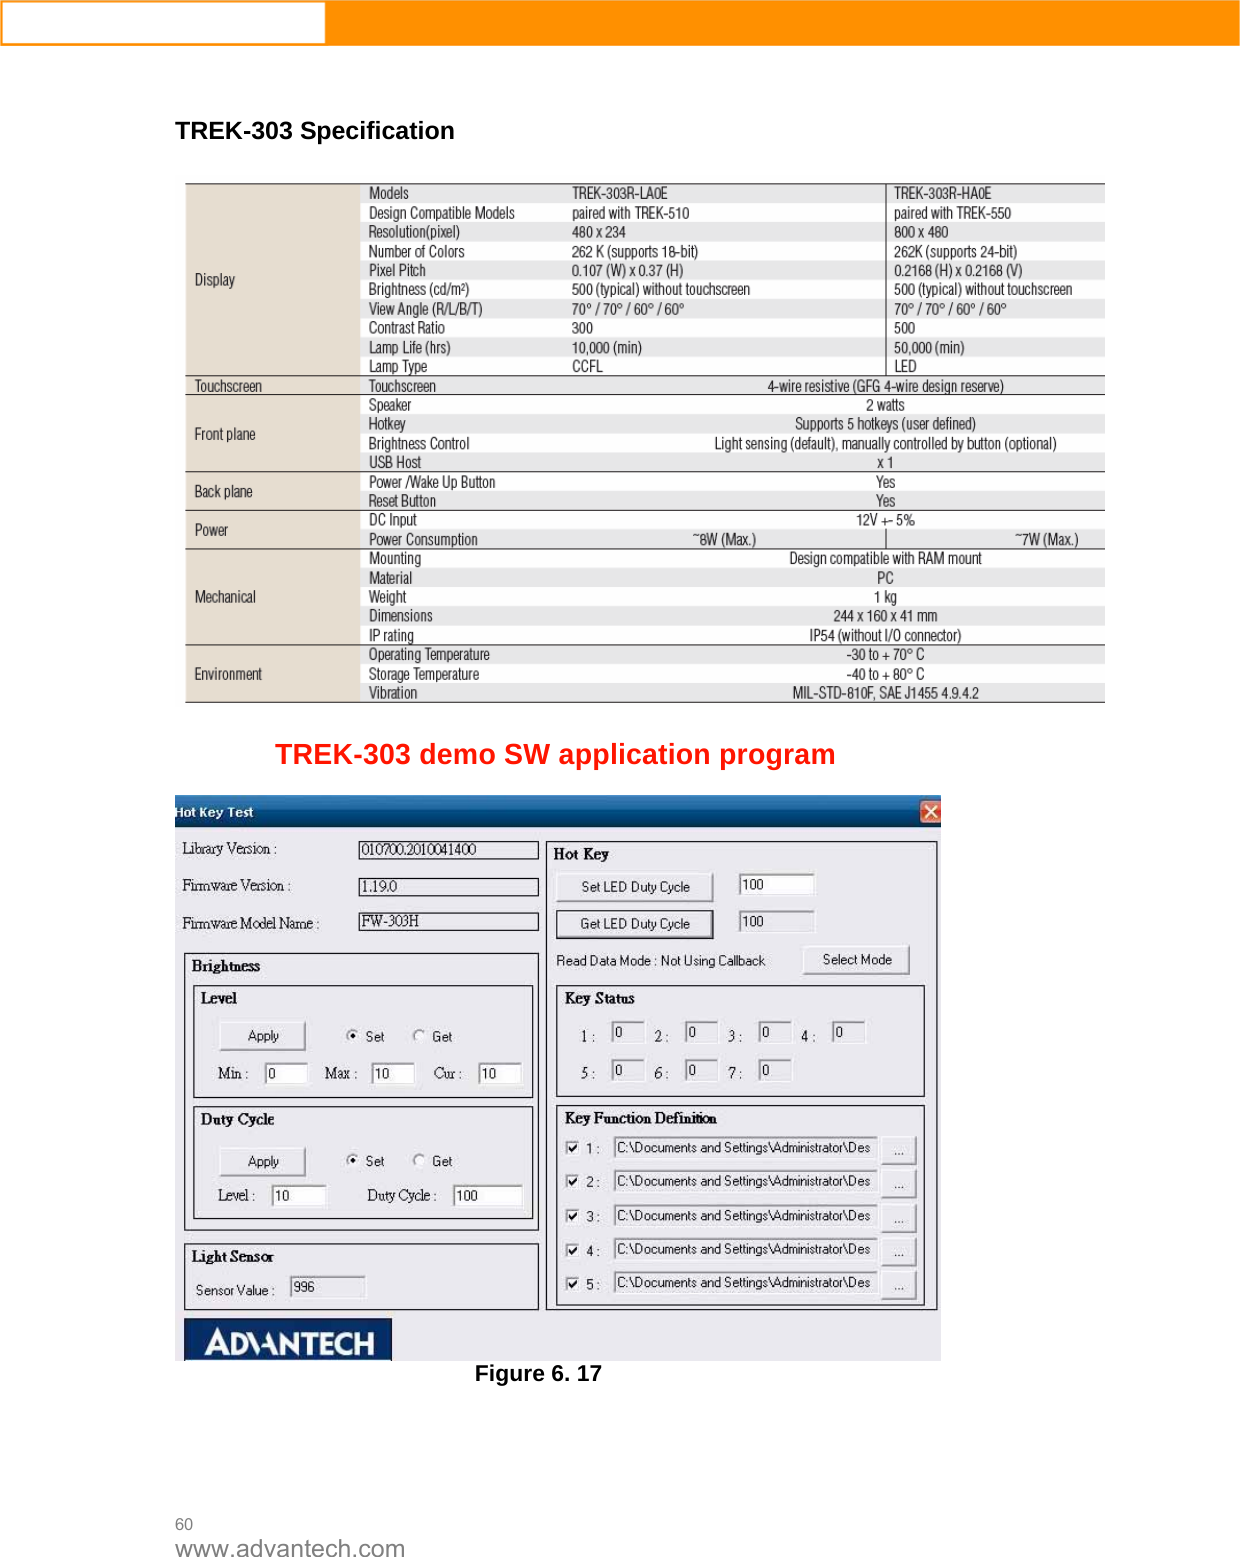  60 www.advantech.com   TREK-303 Specification  TREK-303 demo SW application program  Figure 6. 17     